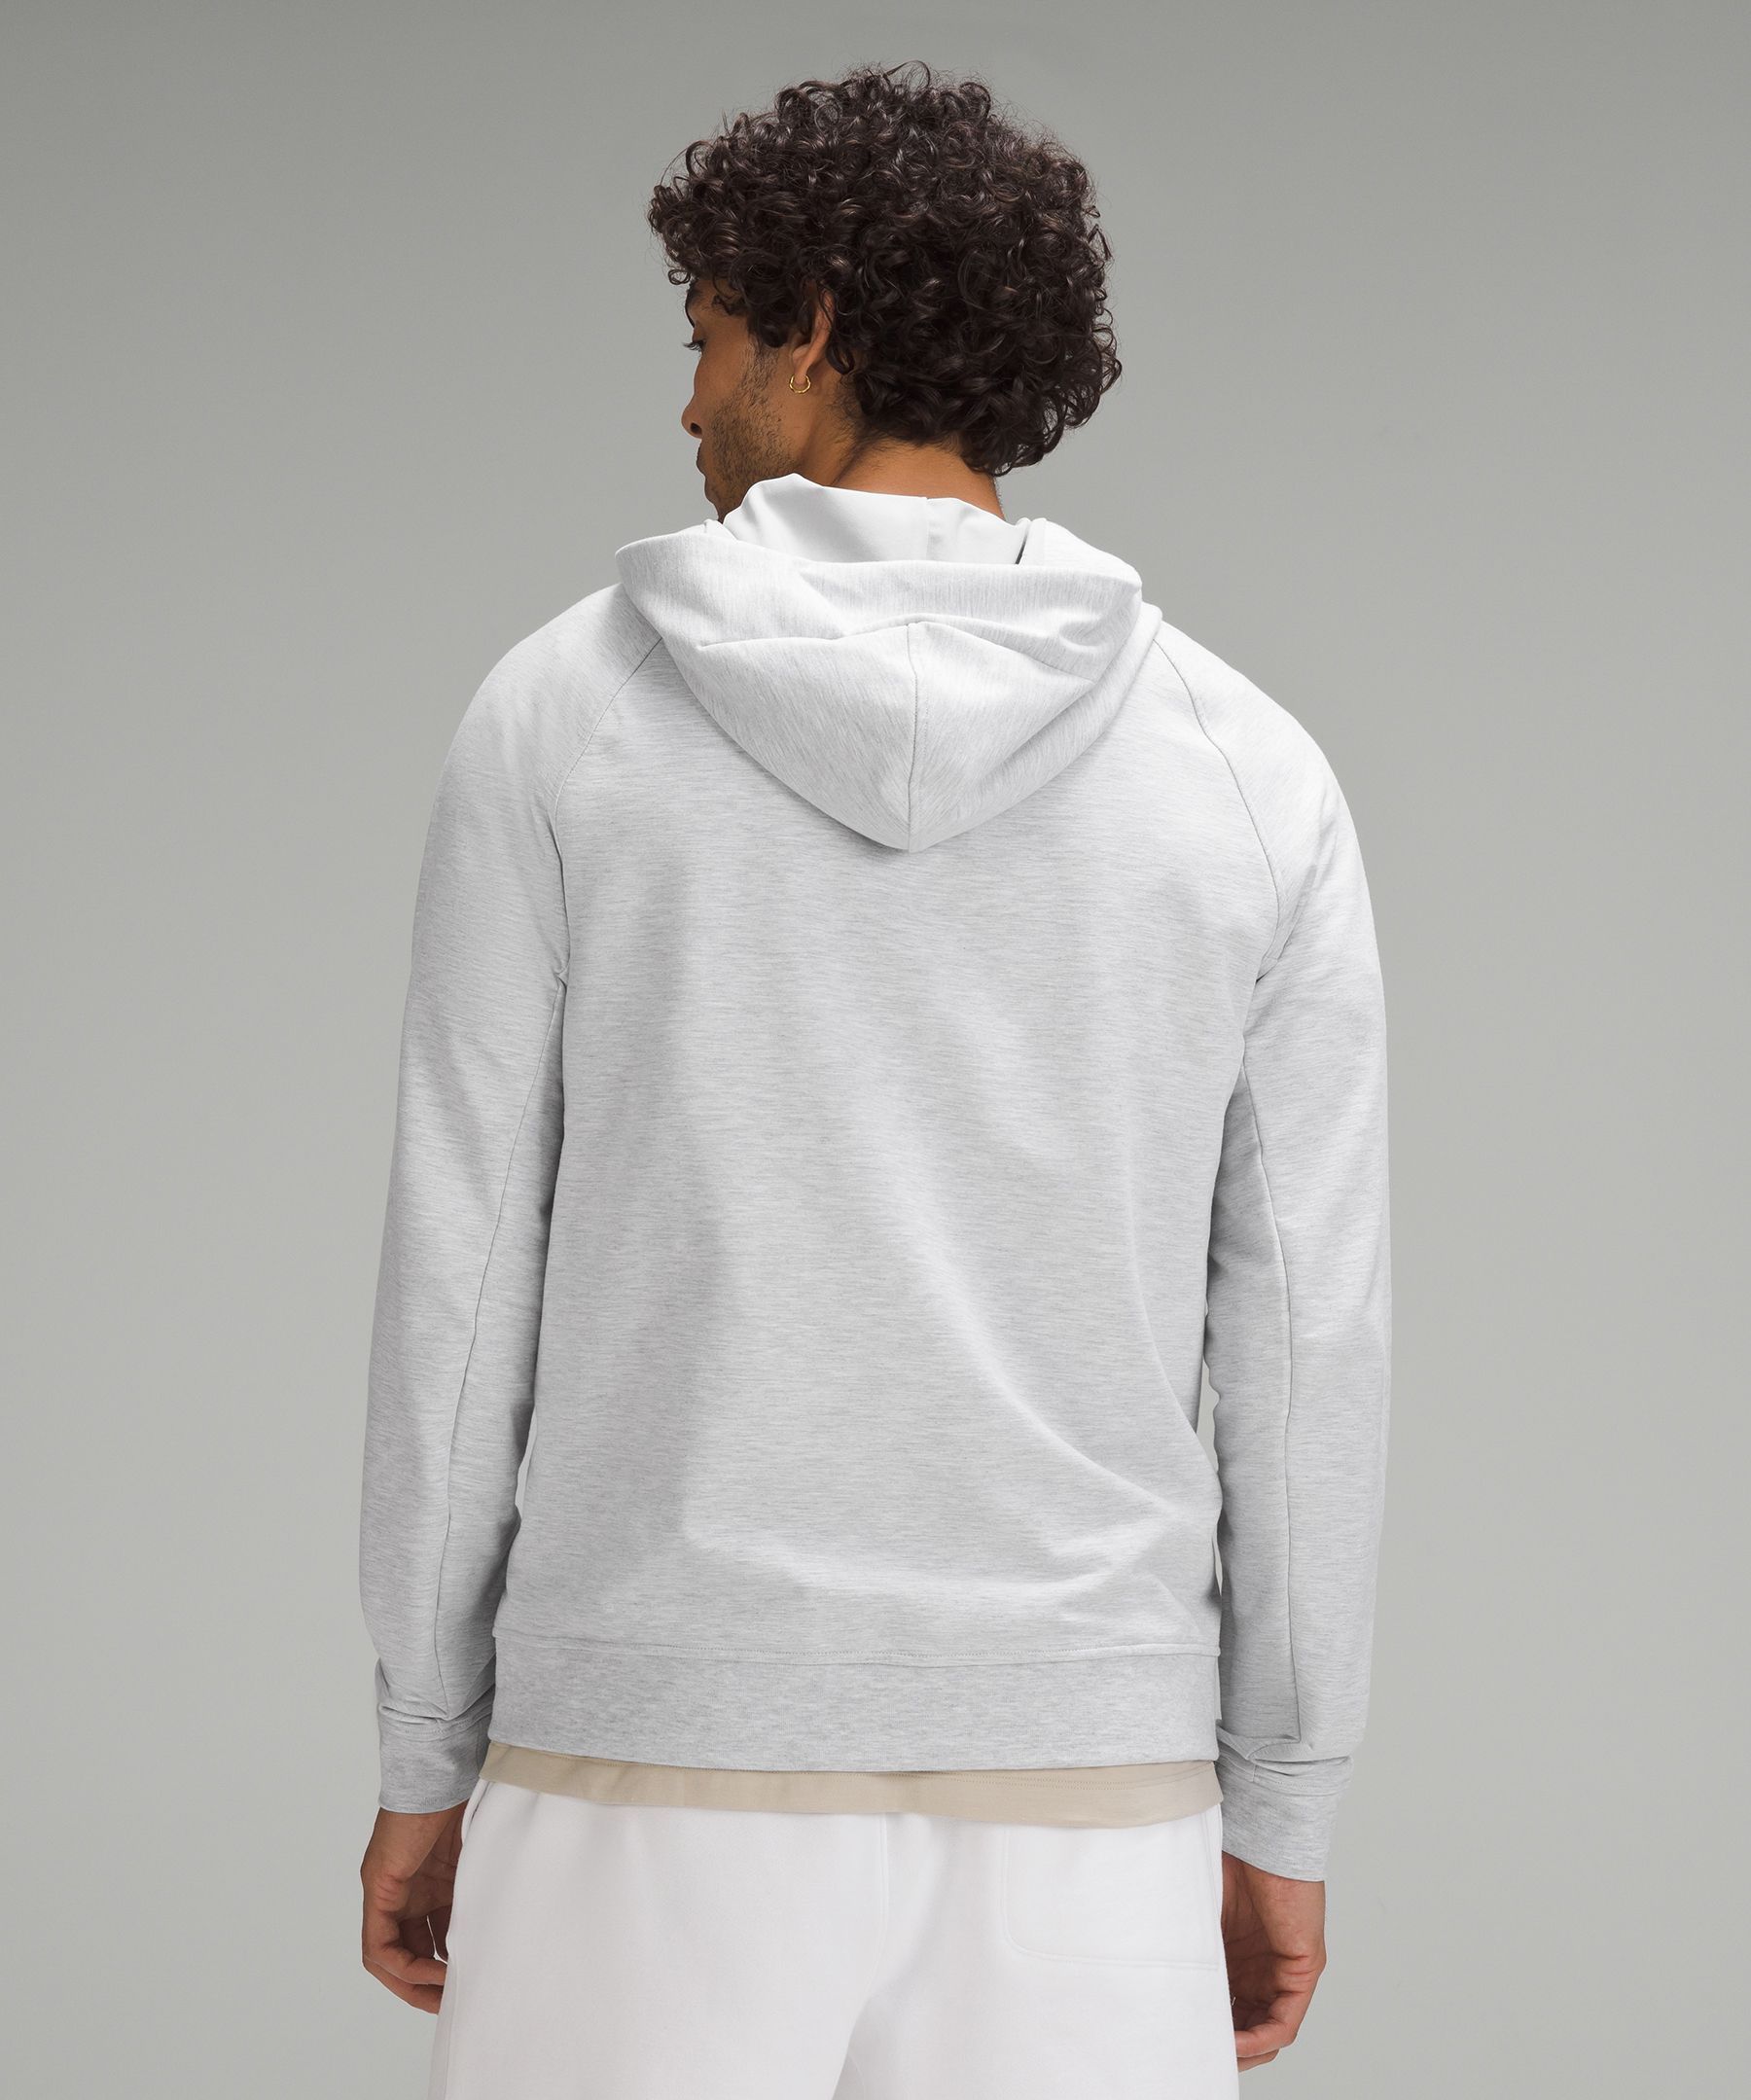 lululemon city sweat zip hoodie